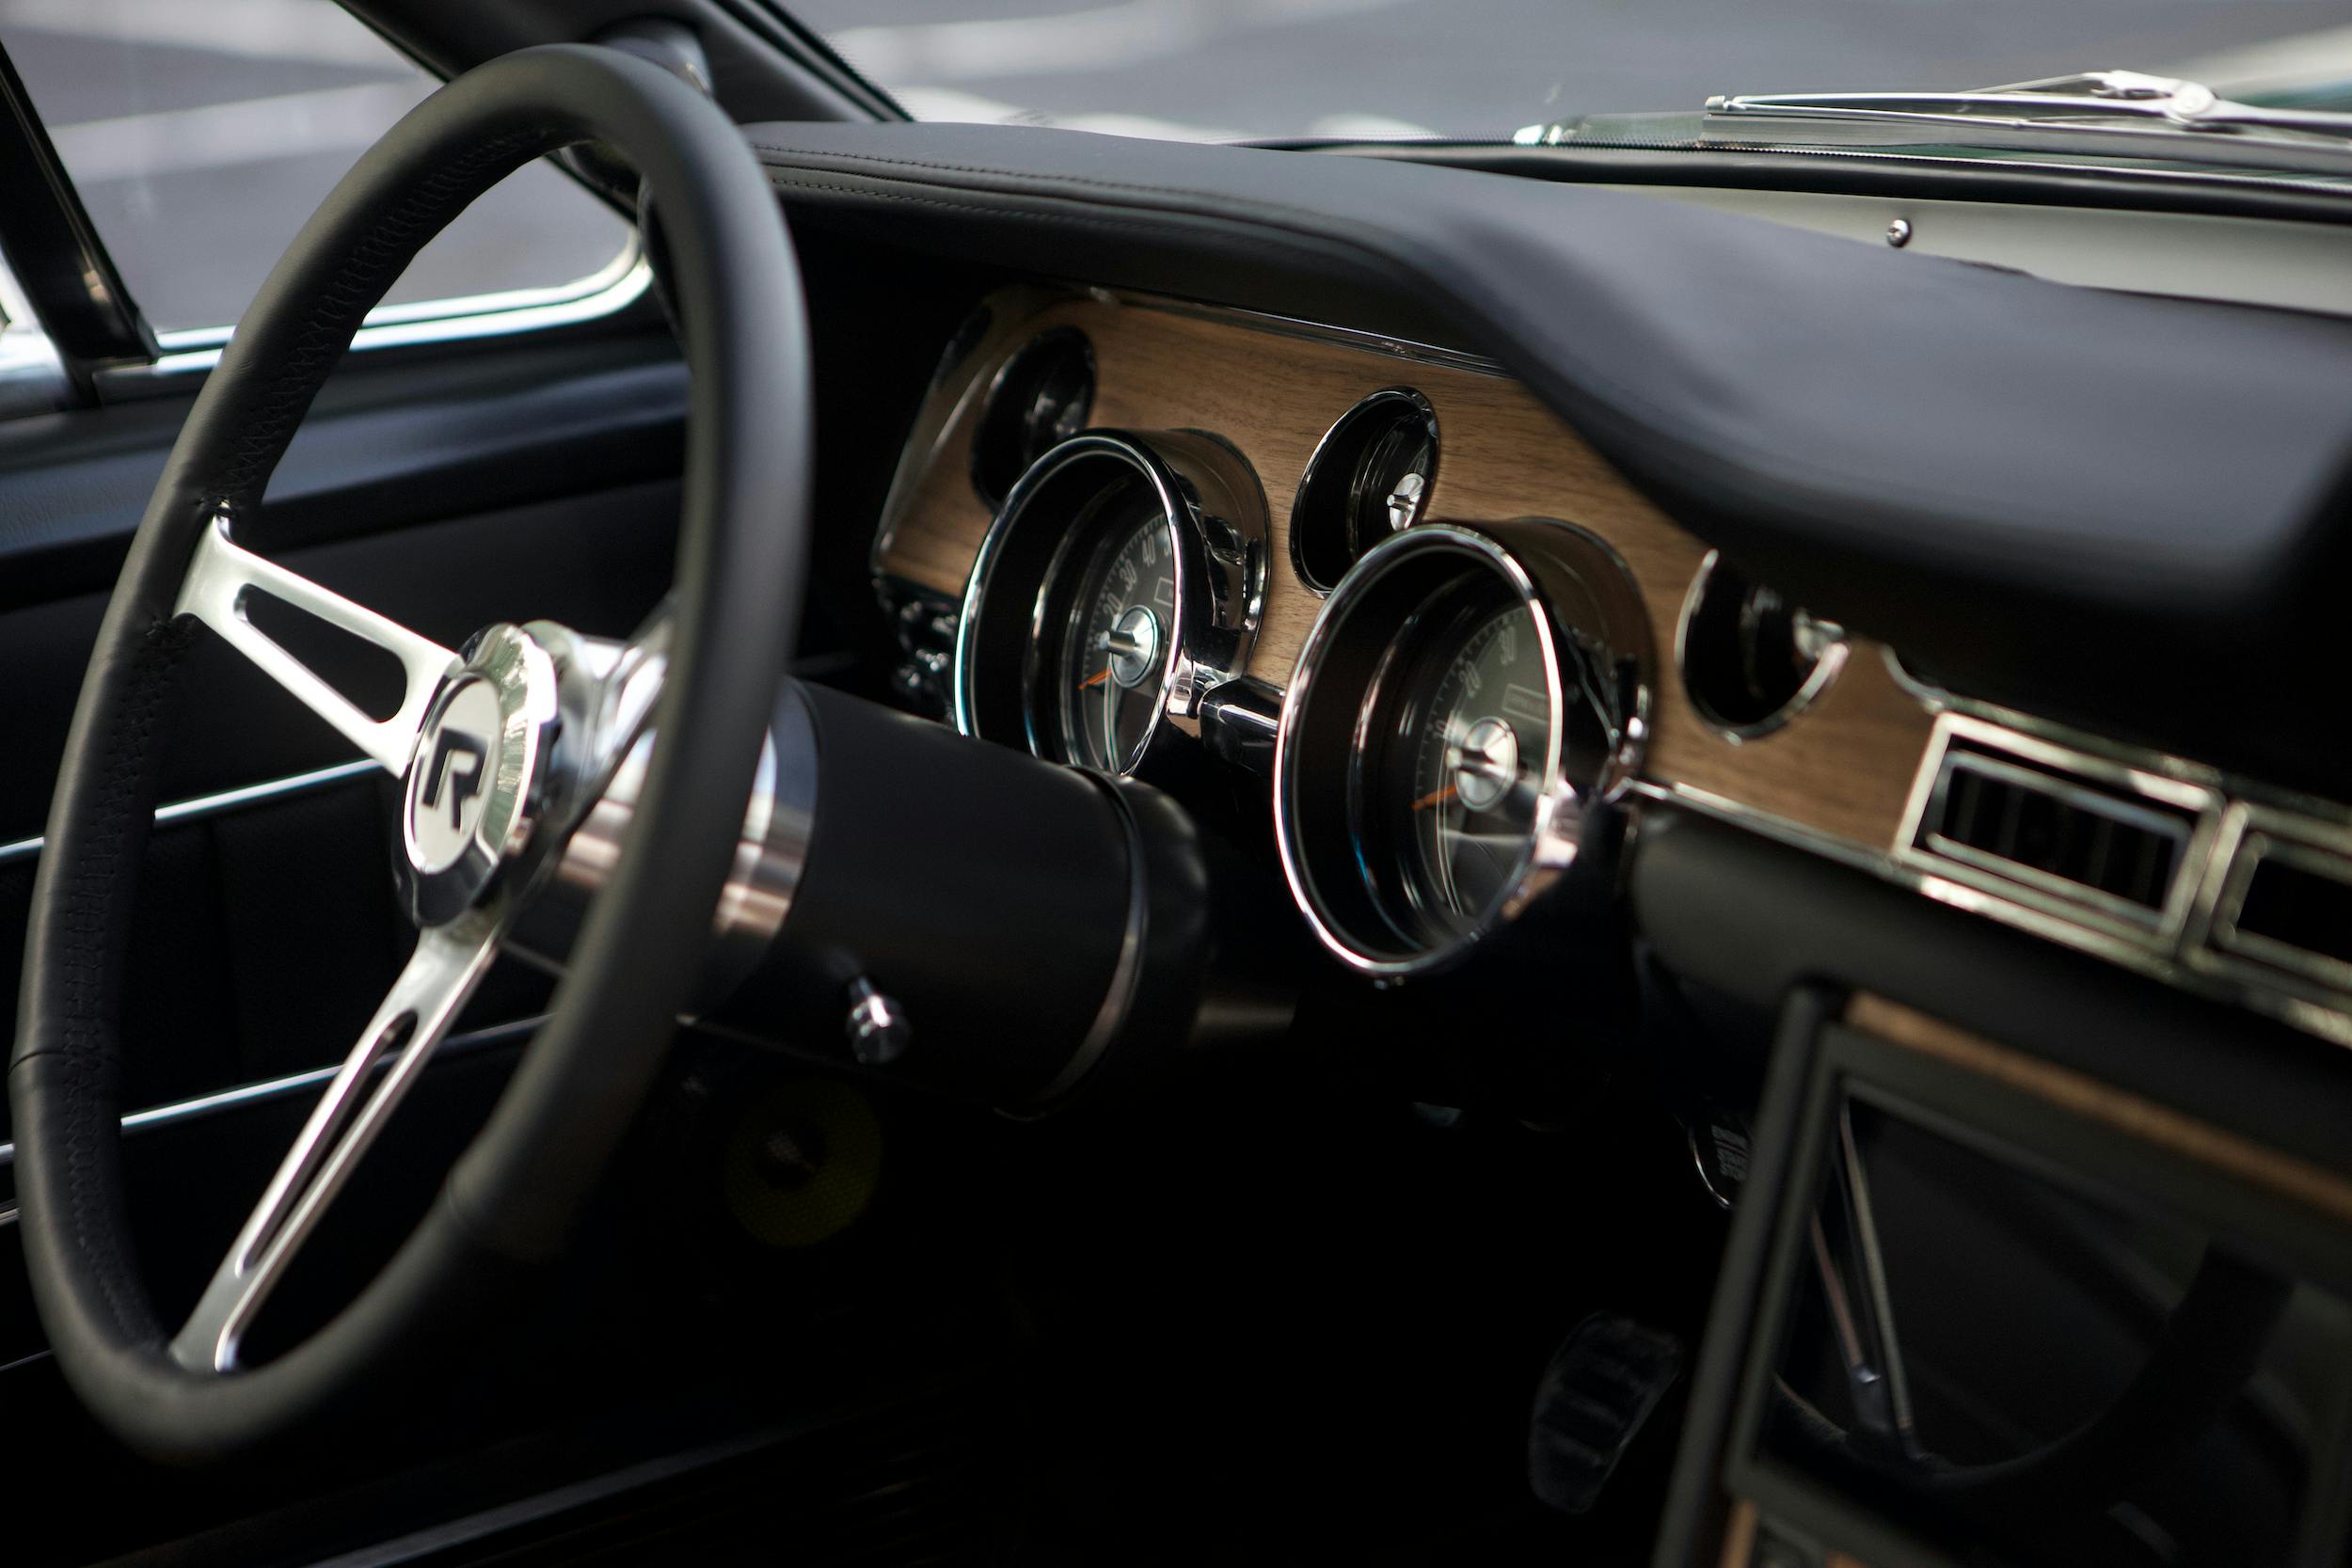 Revology 1968 Mustang GT Cobra Jet interior dash